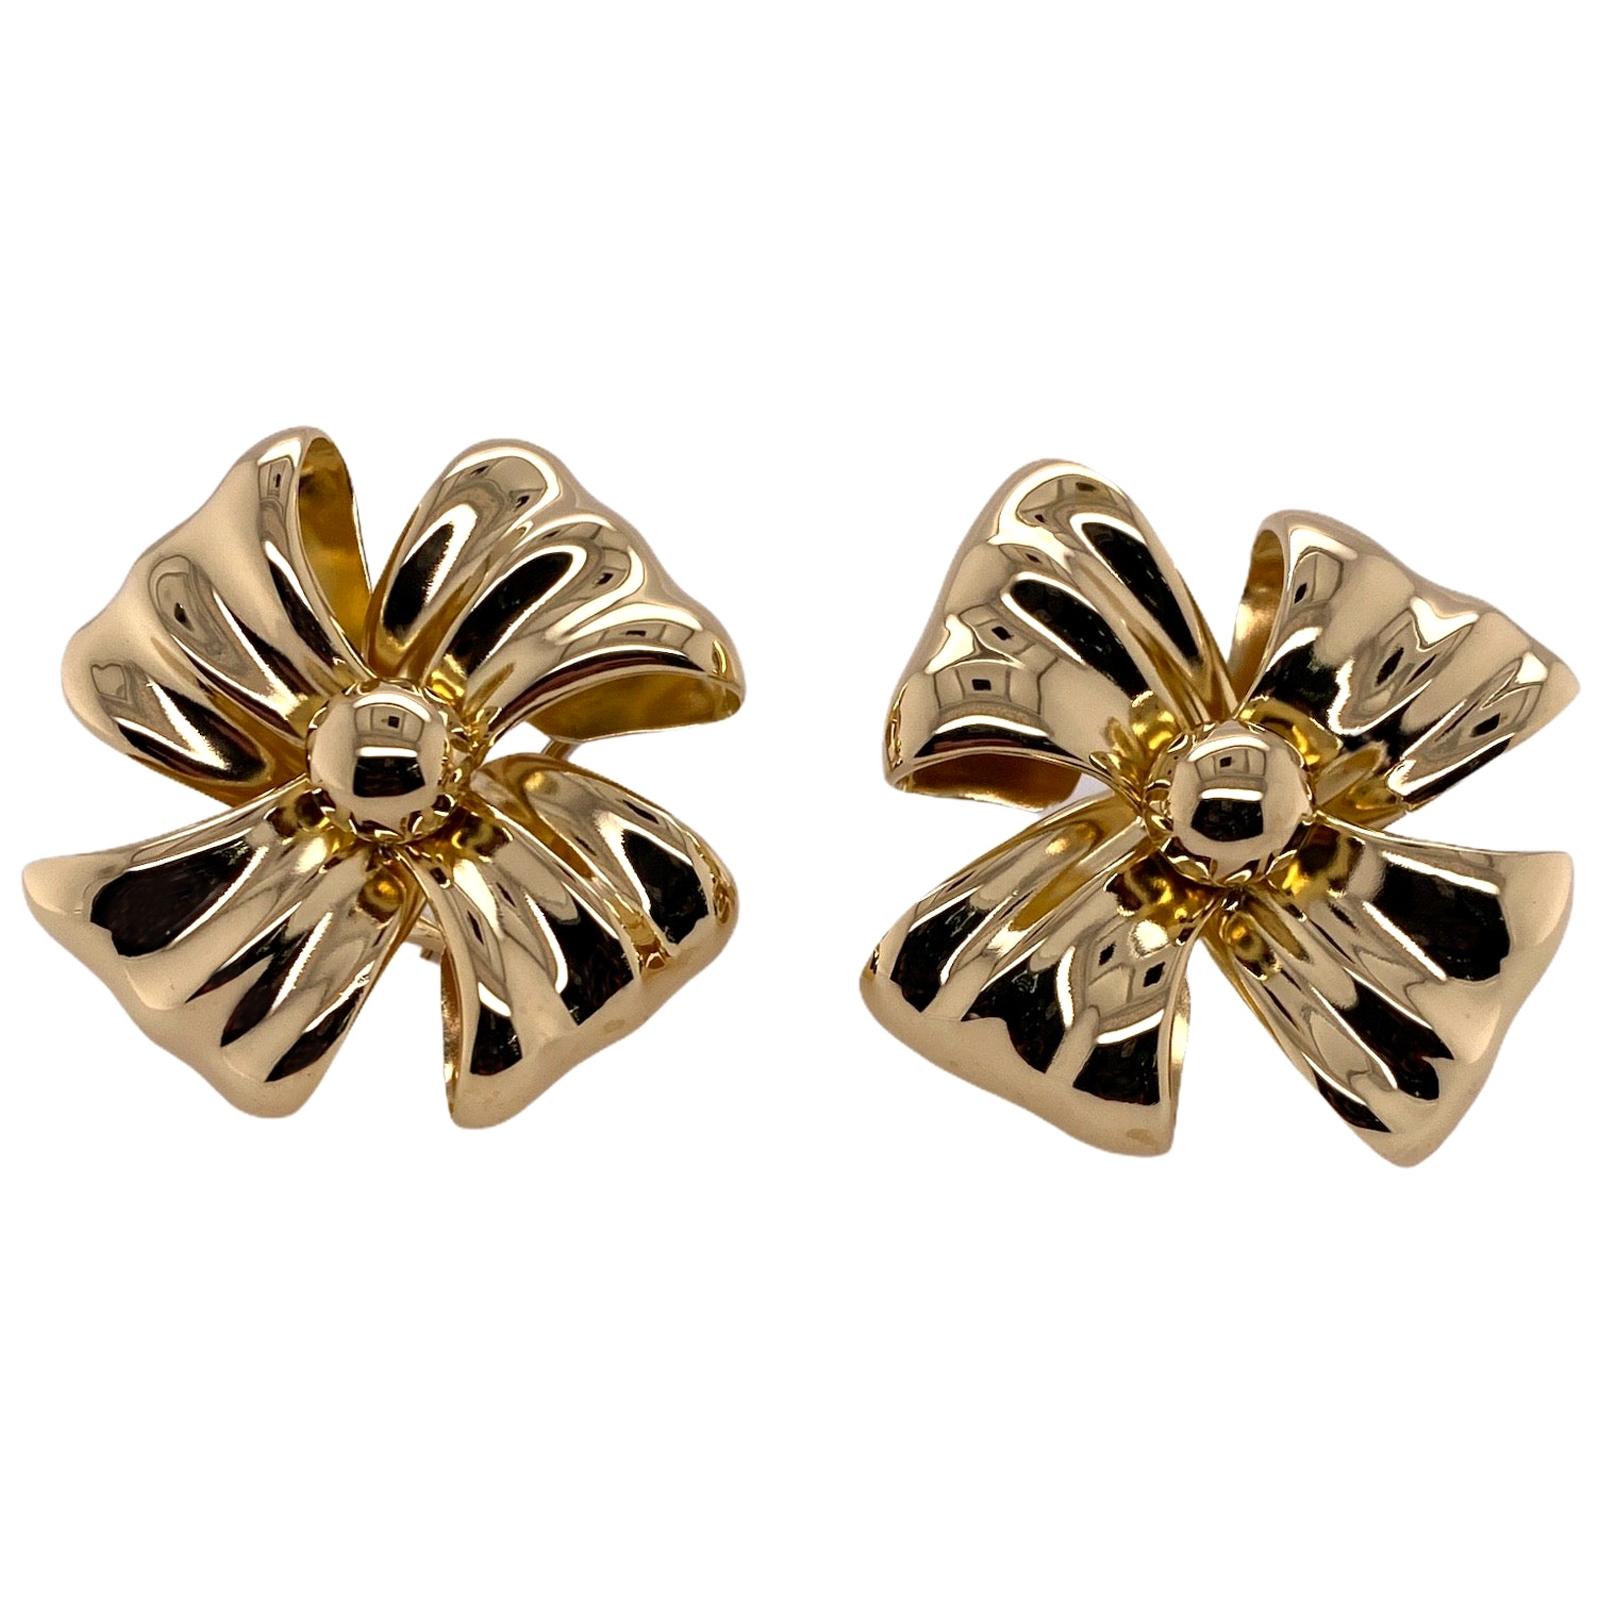 Italian 18 Karat Yellow Gold Ribbon Bow Vintage Ear Clip Earrings